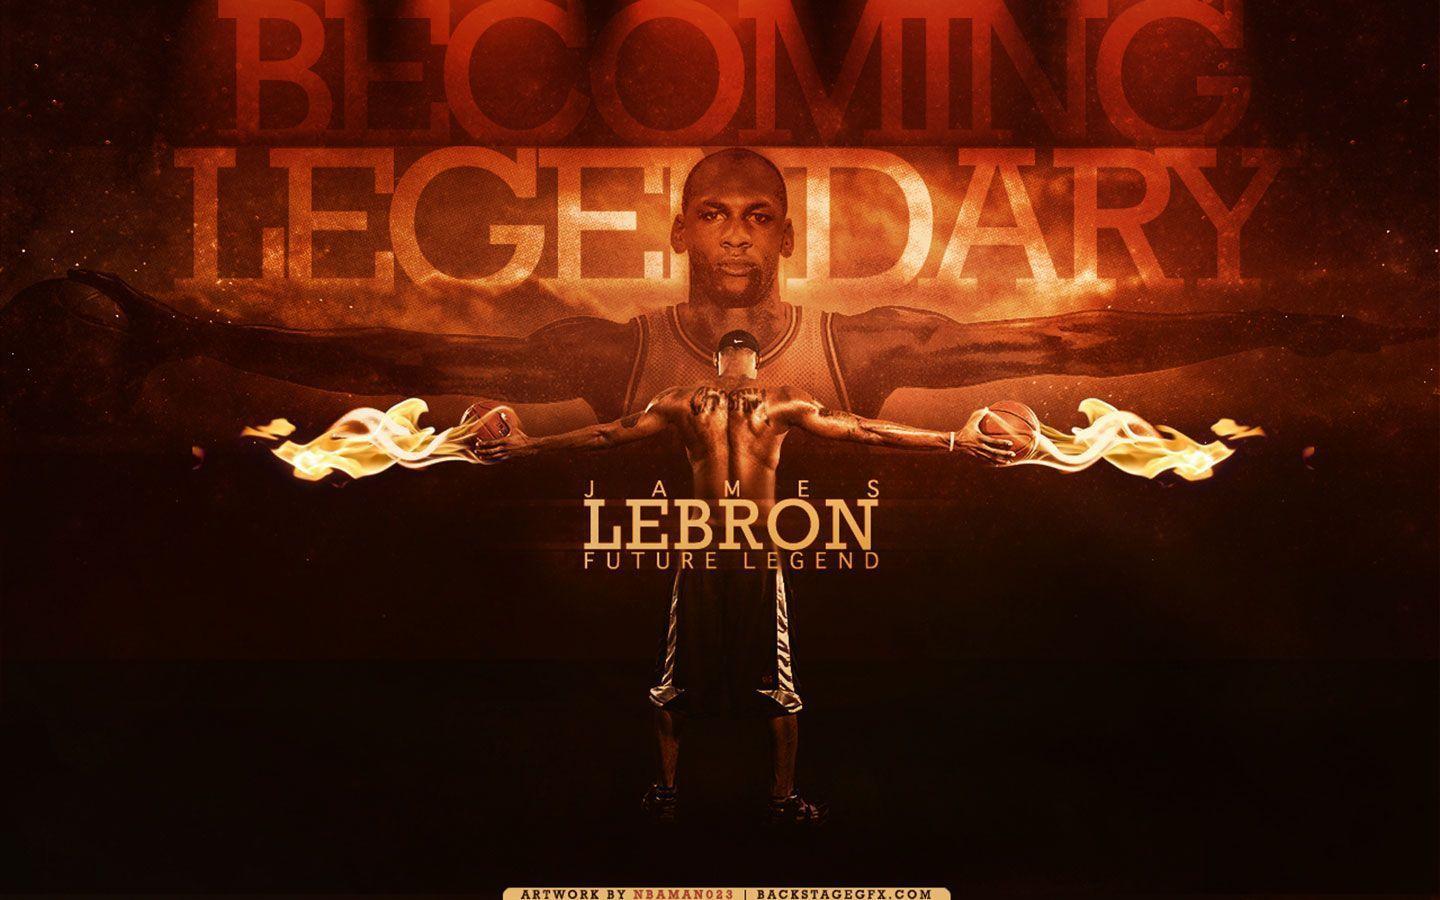 LeBron James Future Legend Widescreen Wallpaper. Basketball